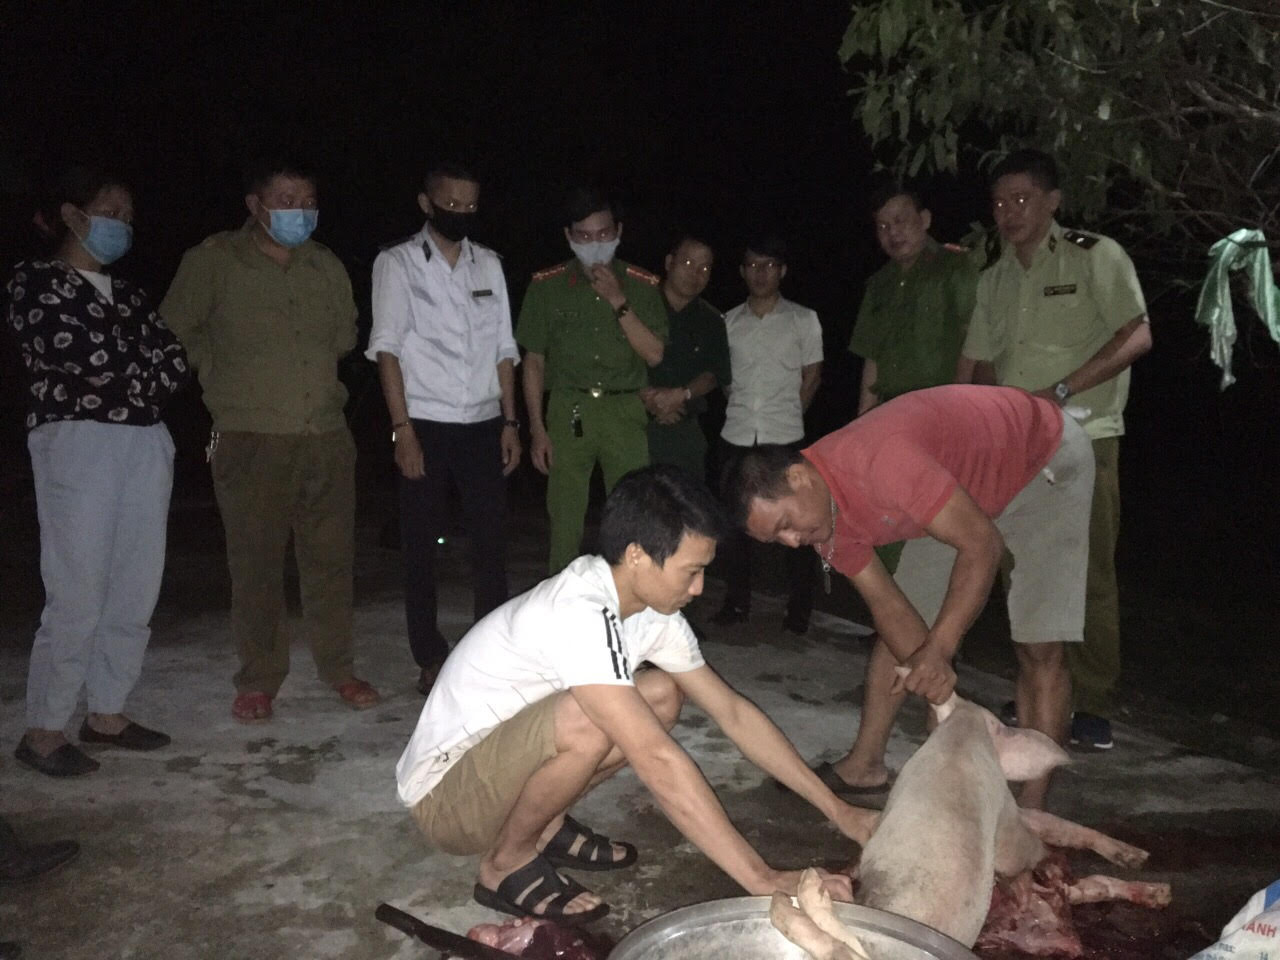 UBND xã Nghĩa Thuận phối hợp với các cơ quan, lực lượng chức năng huyện bắt giữ xe vận chuyển 32 con lợn trái phép qua địa bàn xã Nghĩa Thuận